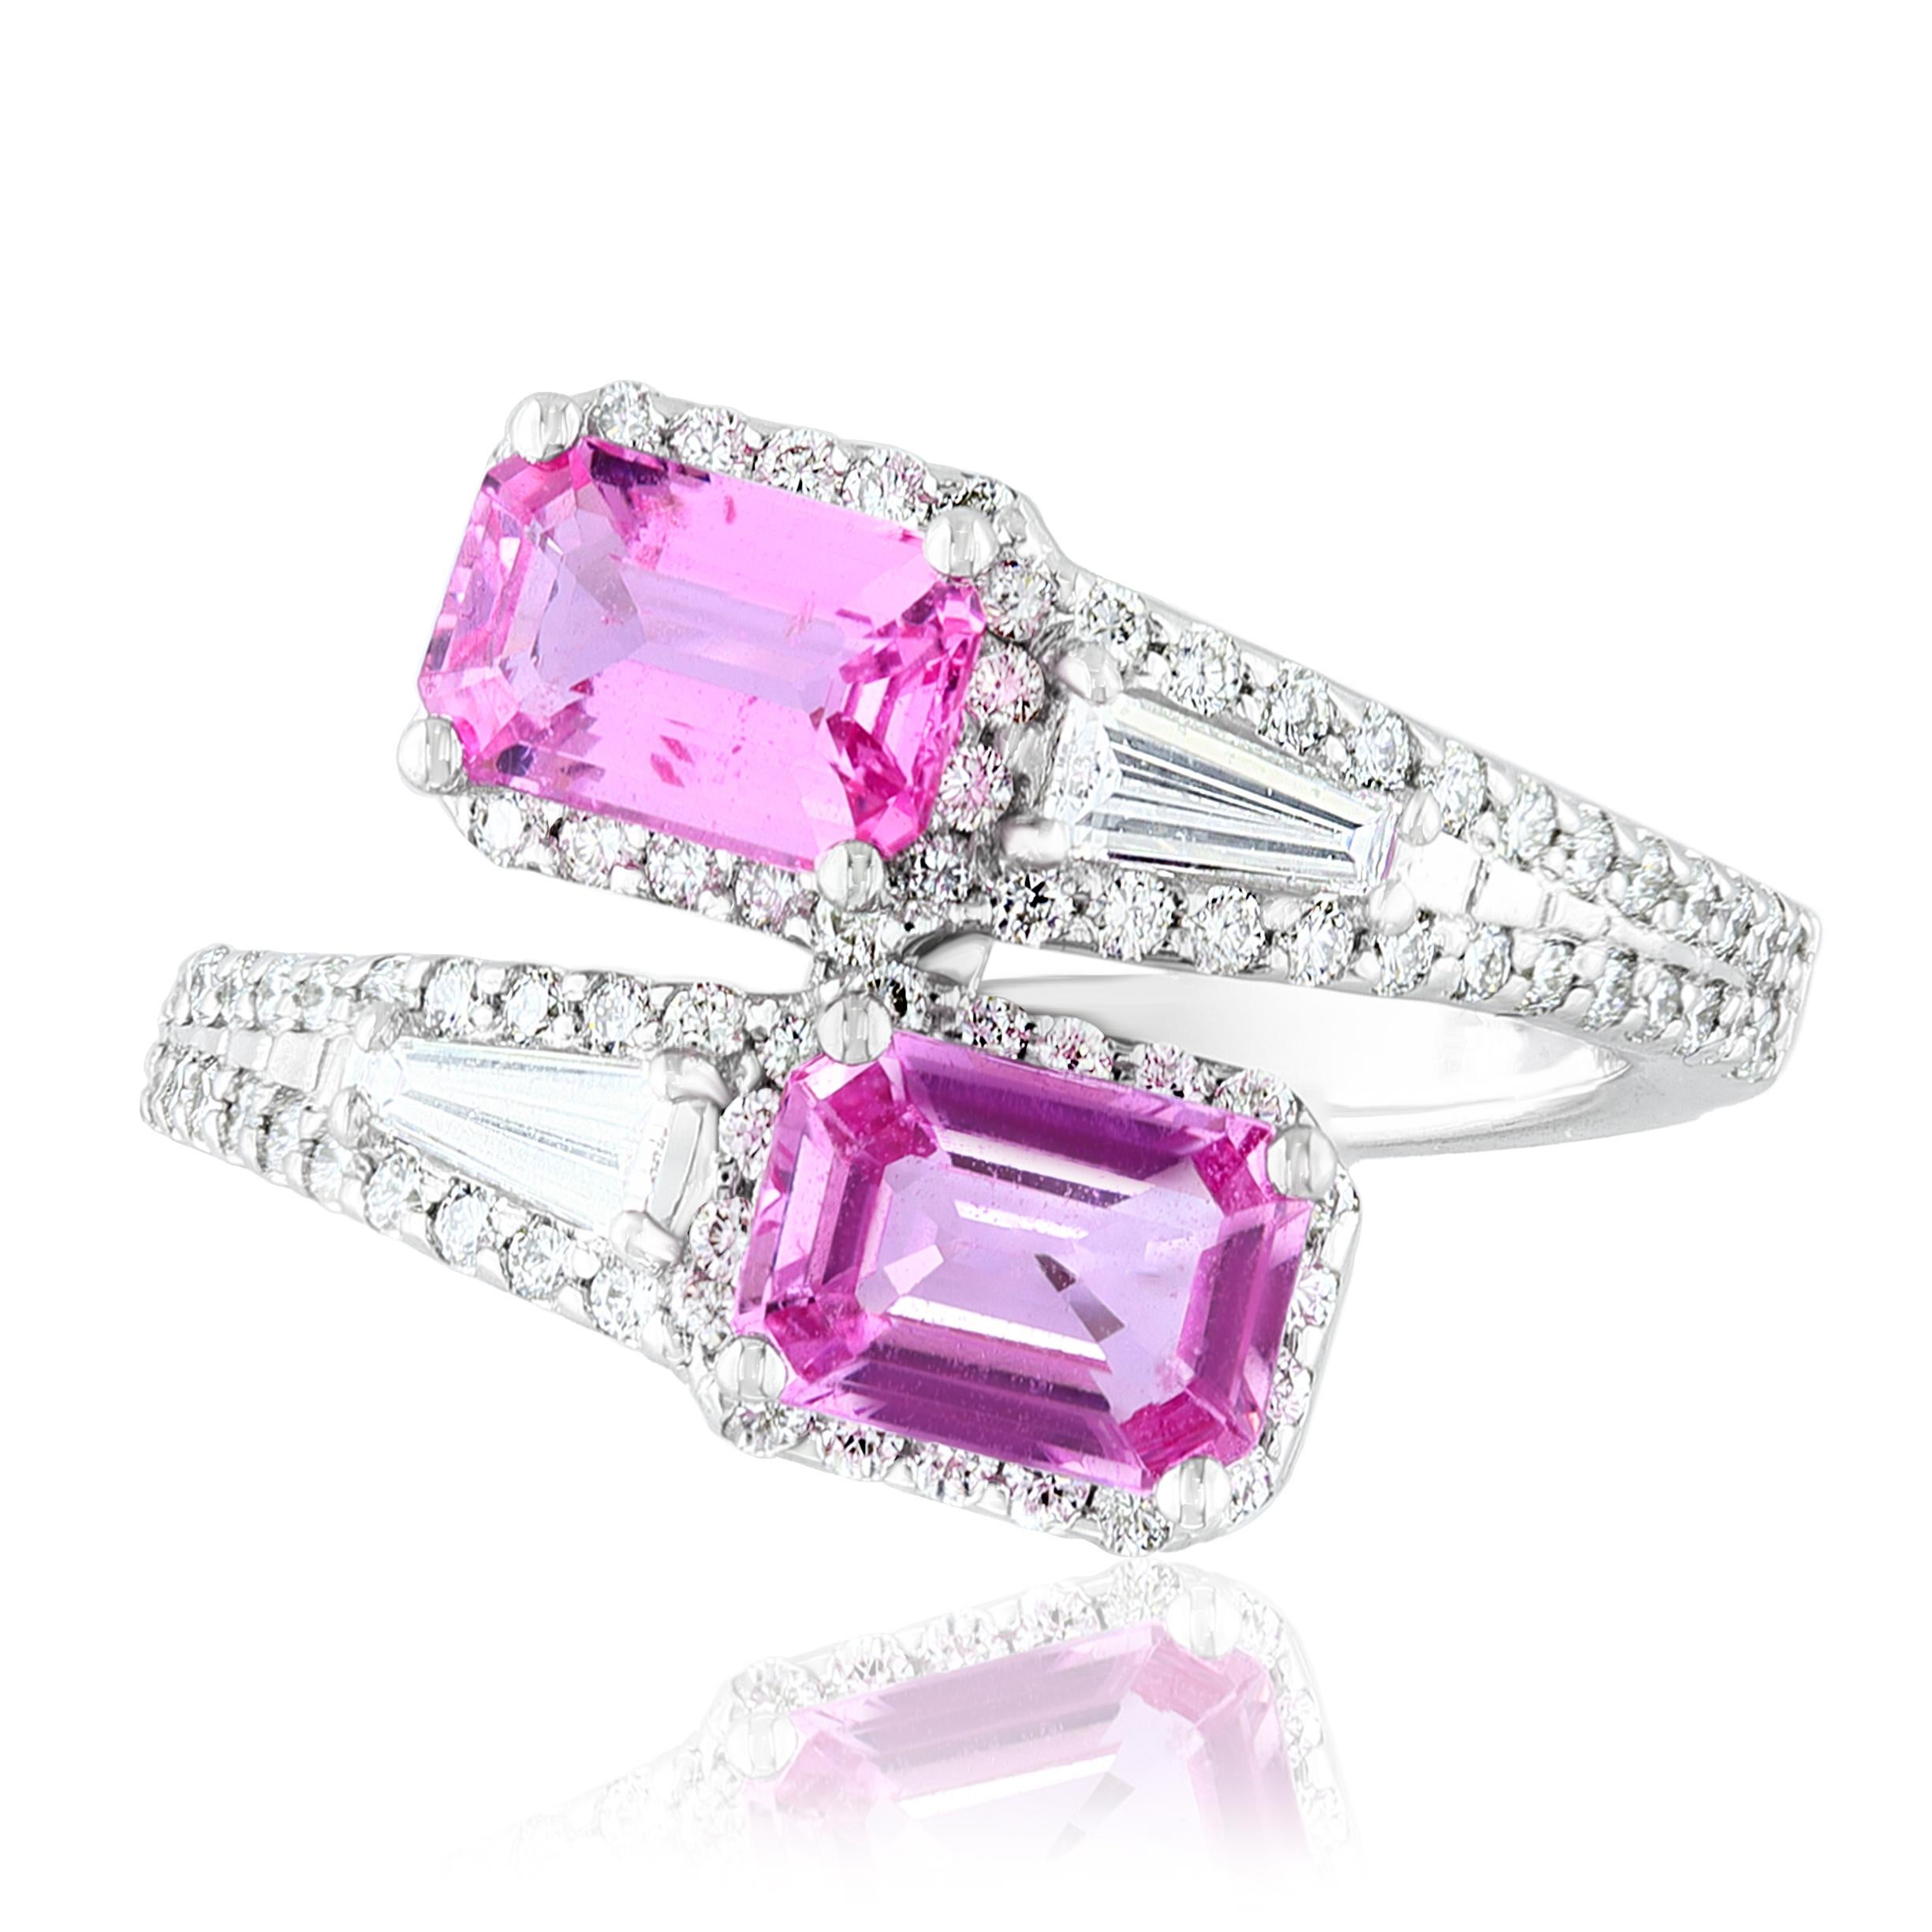 Der atemberaubende Ring Toi et Moi für die Ewigkeit zeichnet sich durch 2 rosa Saphire im Smaragdschliff aus, die von 2 Baguette-Diamanten in Ost-West-Richtung umrahmt werden. 84 runde Diamanten befinden sich auf halber Höhe des Schafts.